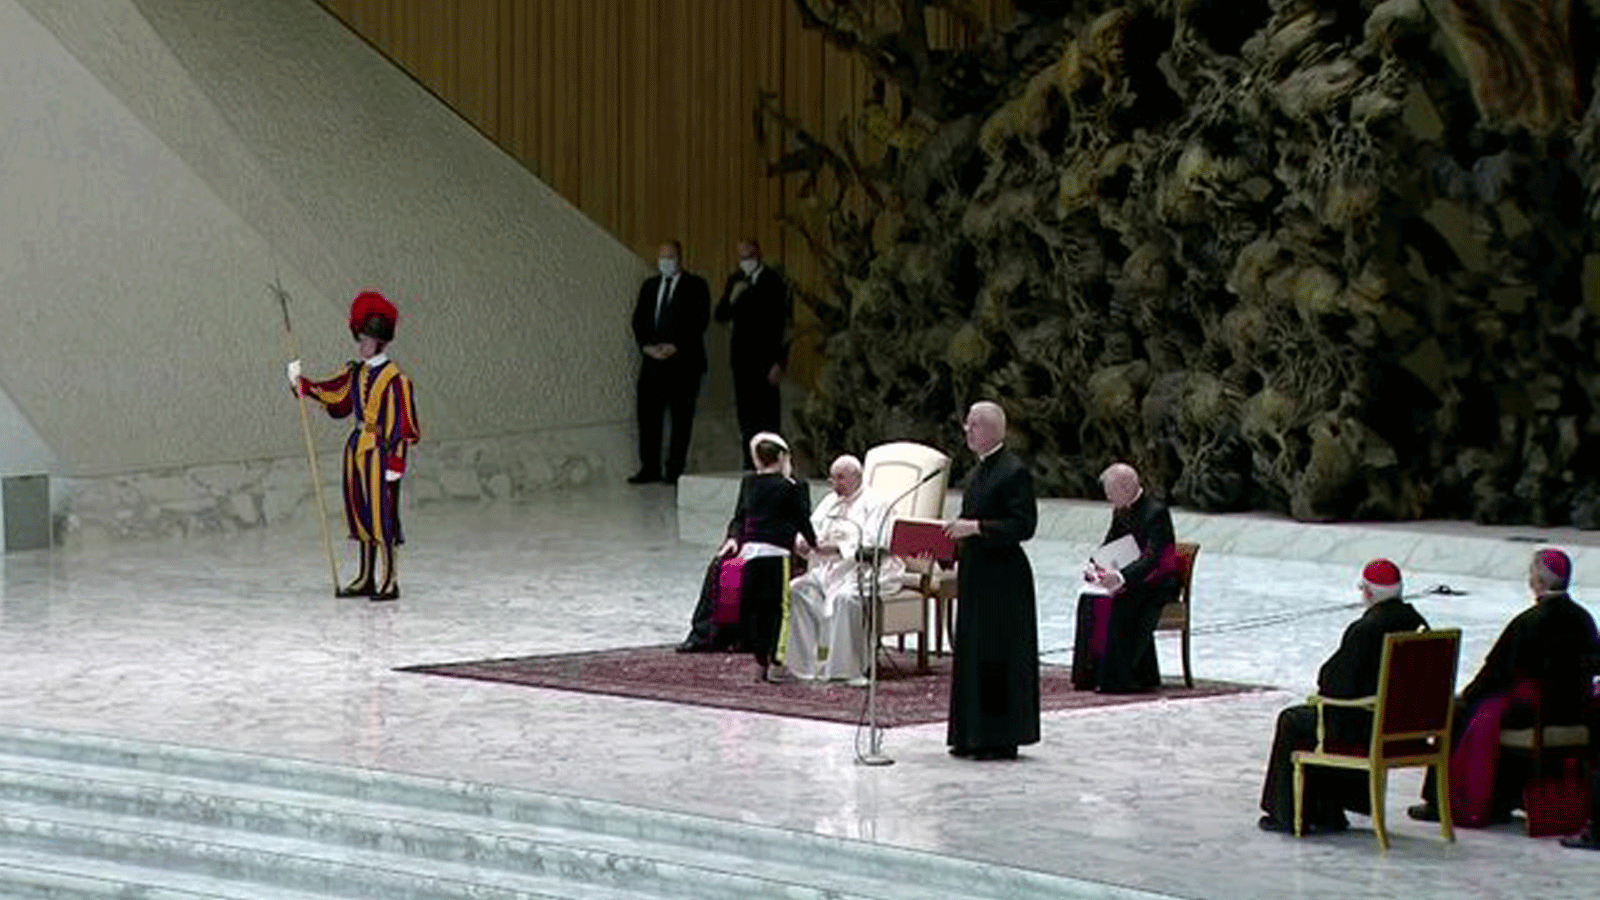 صورة متداولة عبر تويتر للفتى ممسكاً بيد البابا قبل أن يمد يده إلى قلنسوته البيضاء